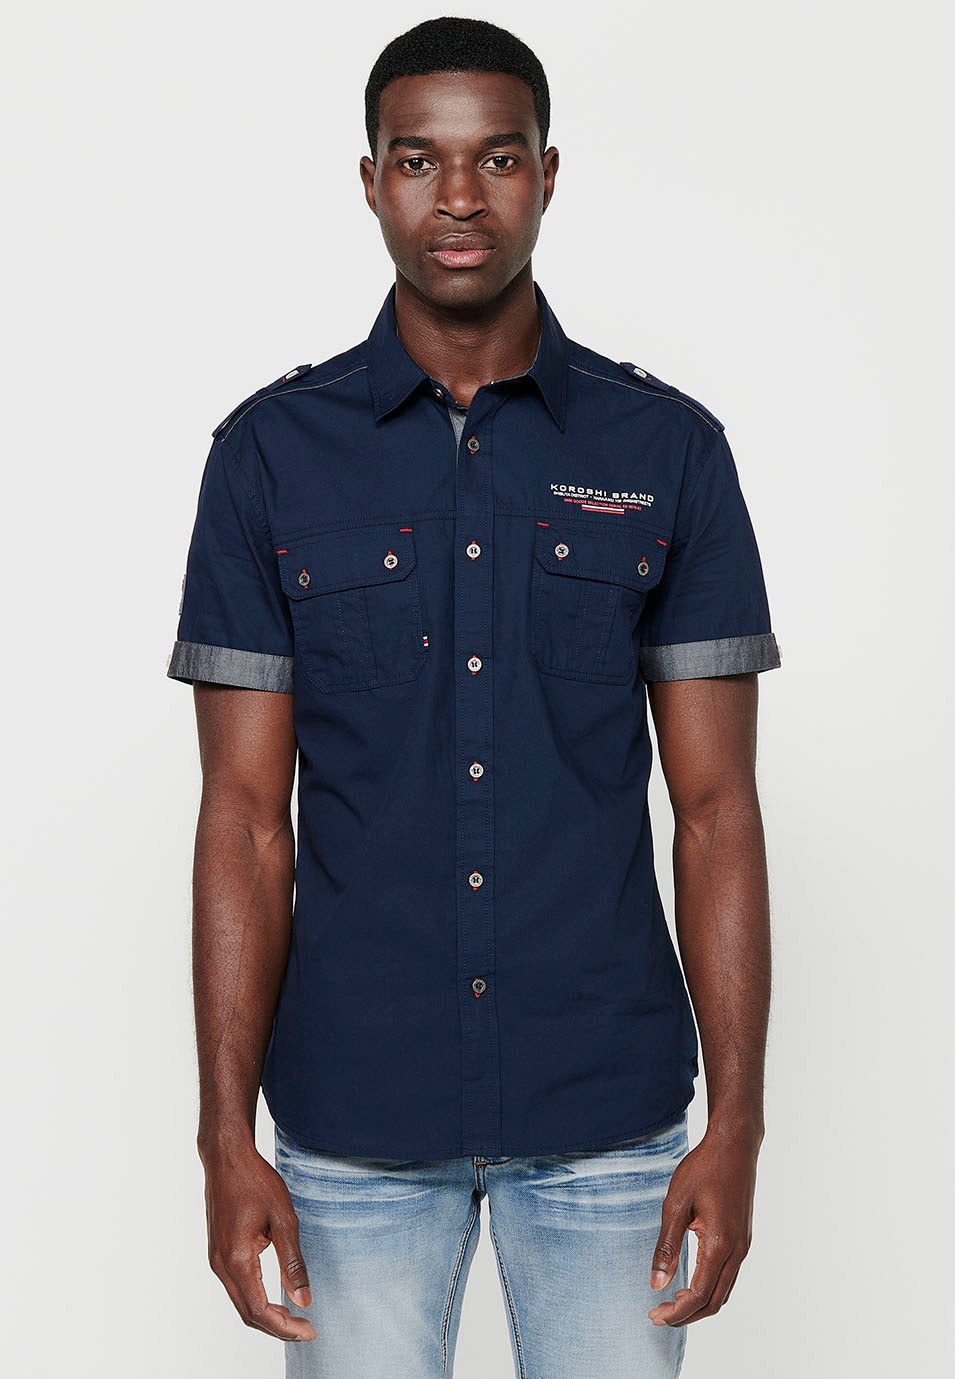 Cotton shirt, short sleeve, shoulder details, navy color for men 2